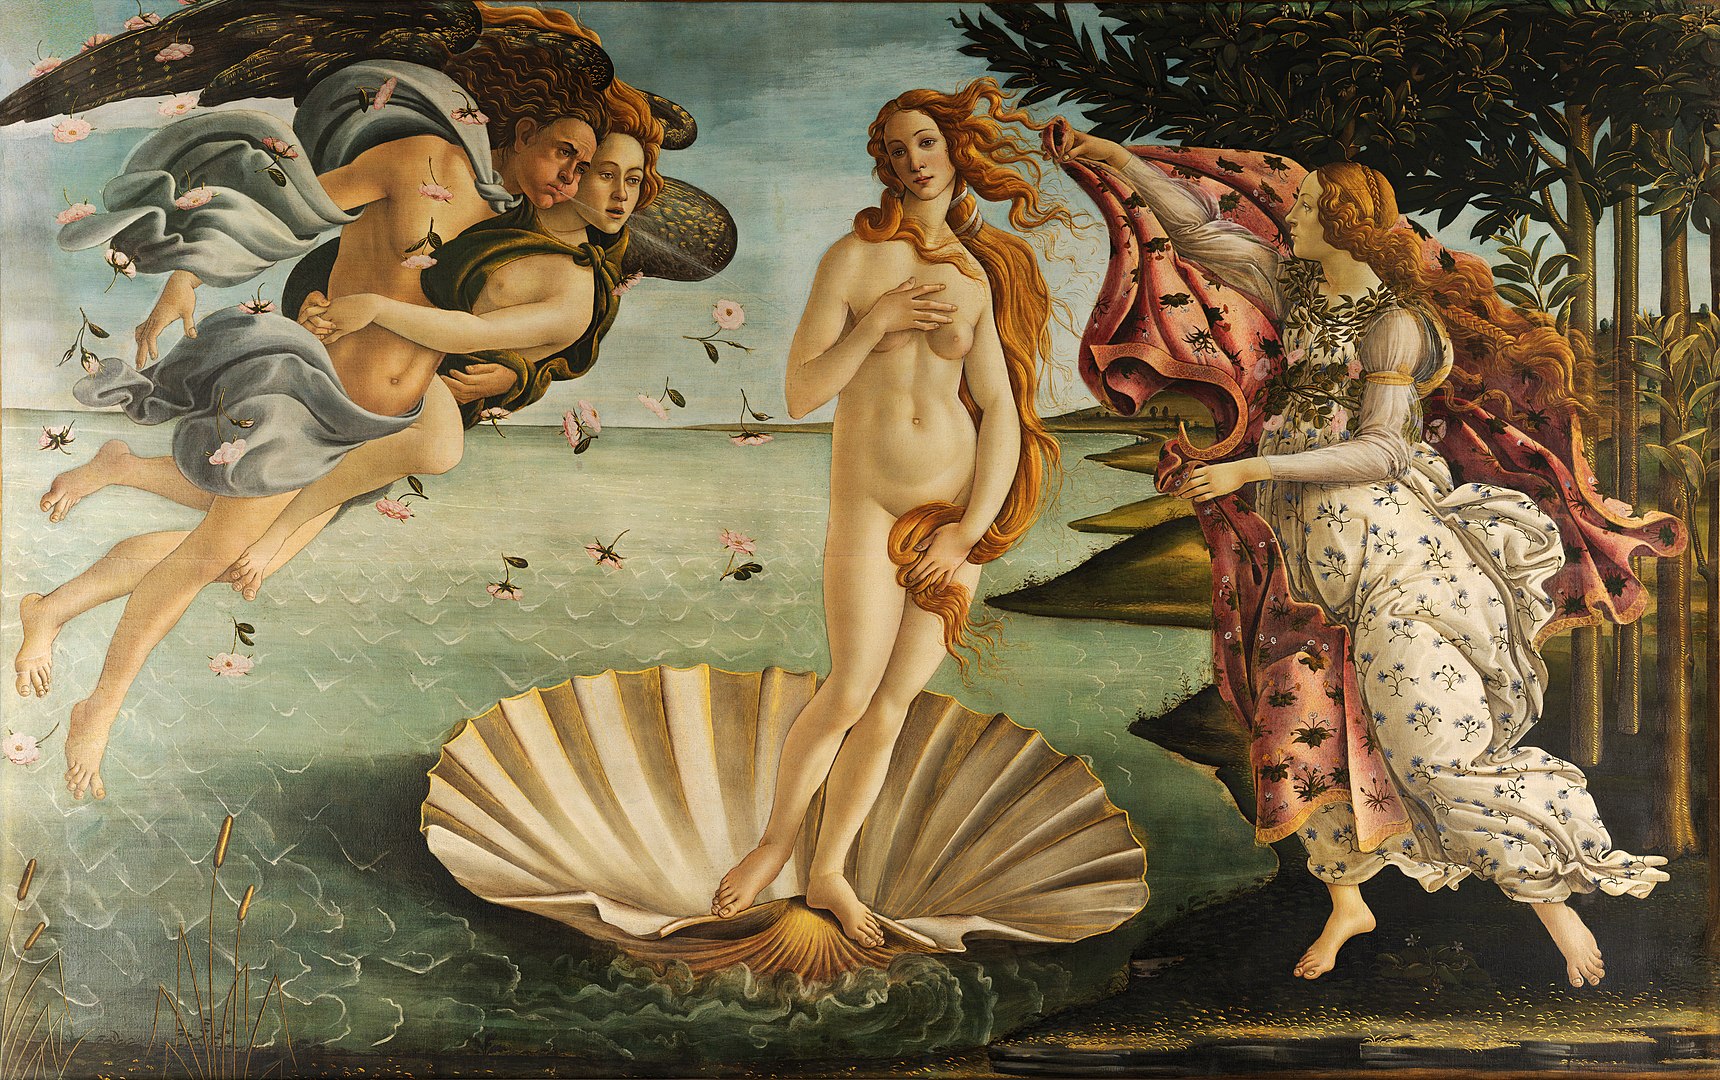 El nacimiento de Venus by Sandro Botticelli - c. 1484–1486 - 172.5 x 278.5 cm Galleria degli Uffizi